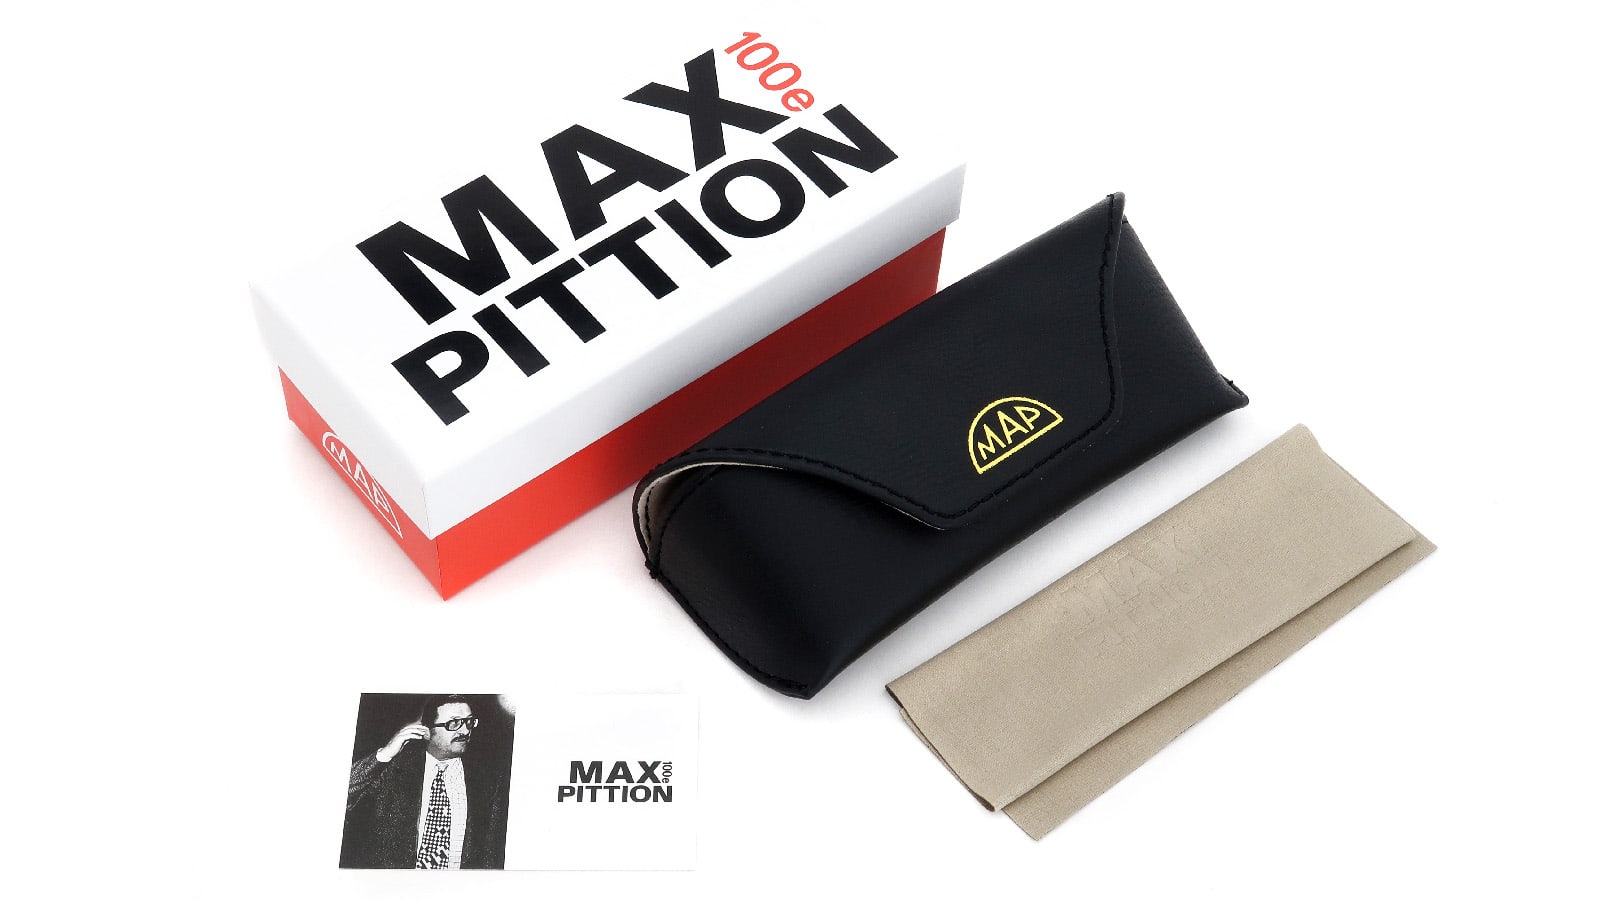 MAX PITTION V WELLINGTON (MXPL-003D) BLONDE TORT 15